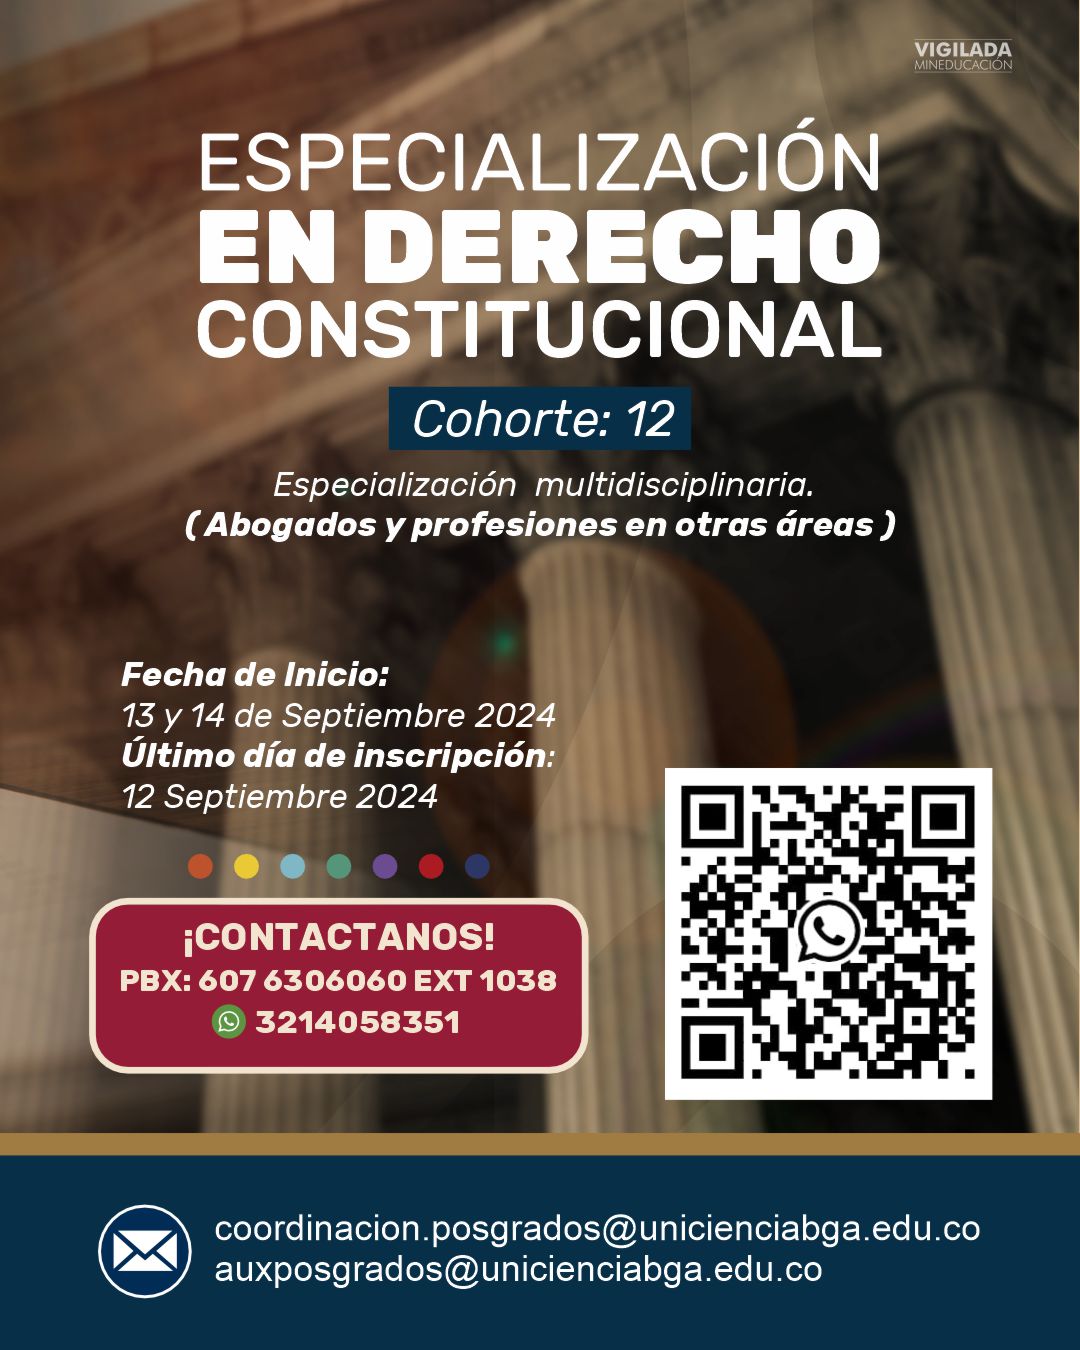 Especialización en Derecho Constitucional Cohorte 12 - UNICIENCIA